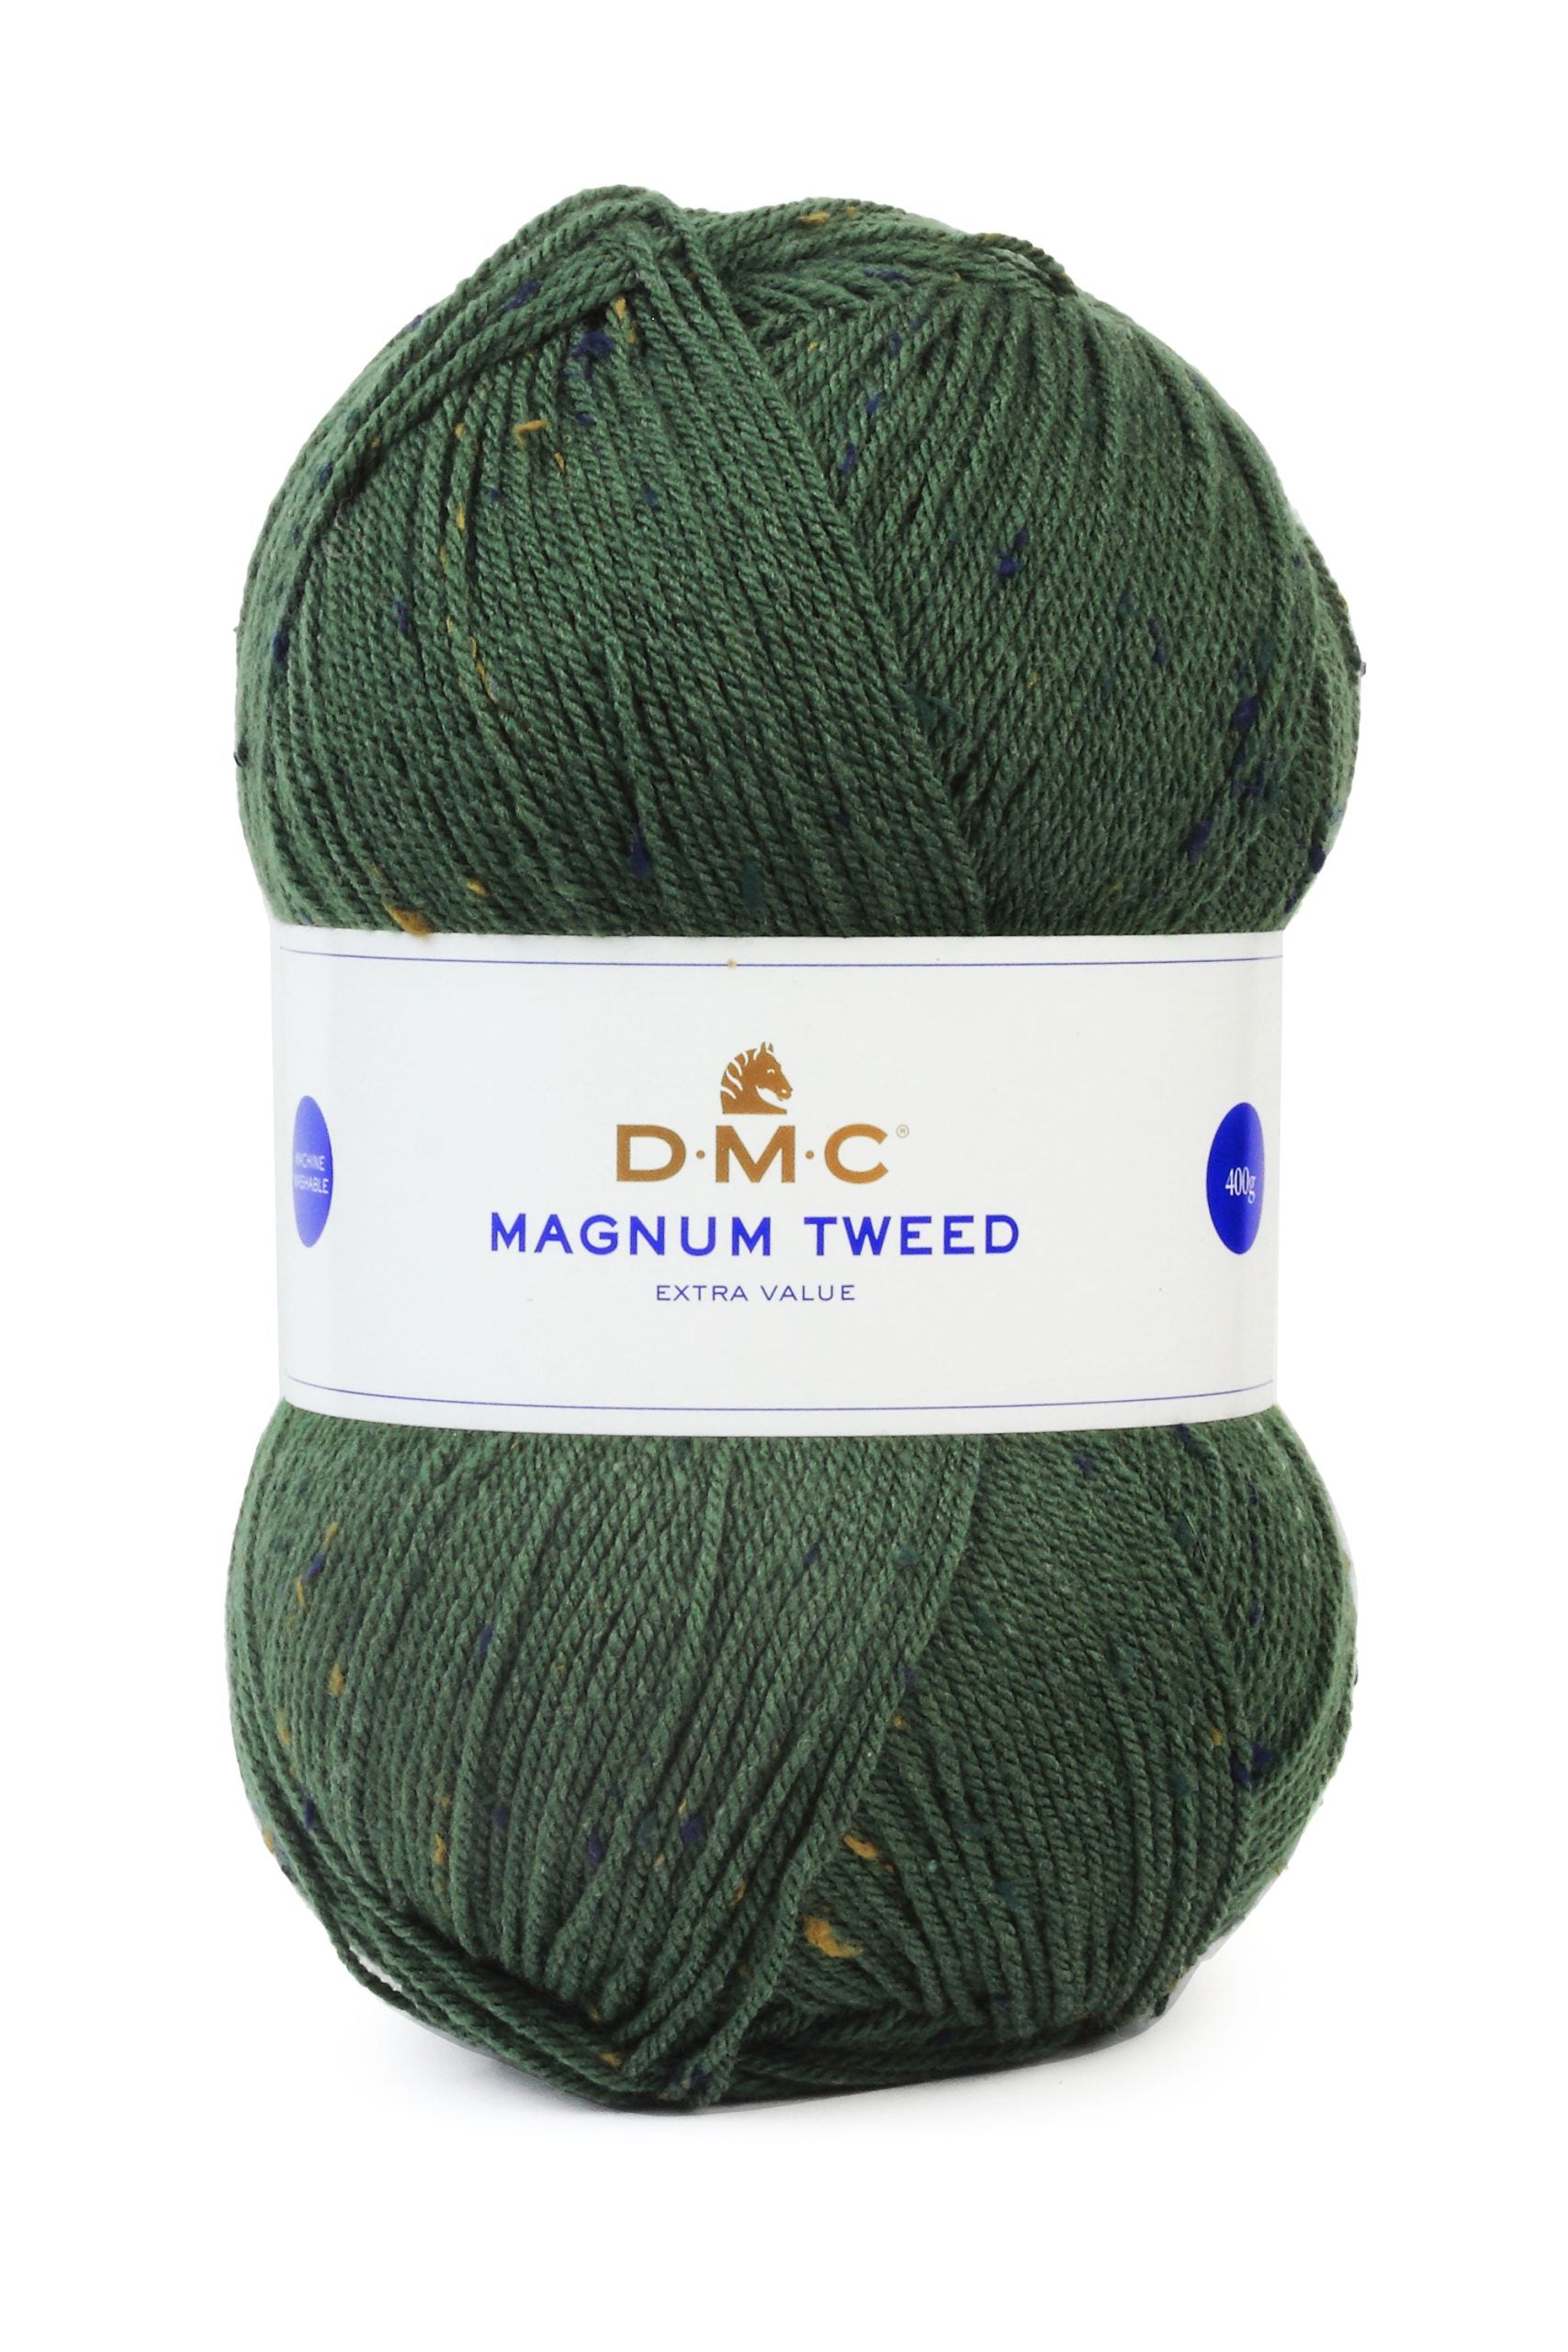 Lana Dmc Magnum Tweed Colore 86